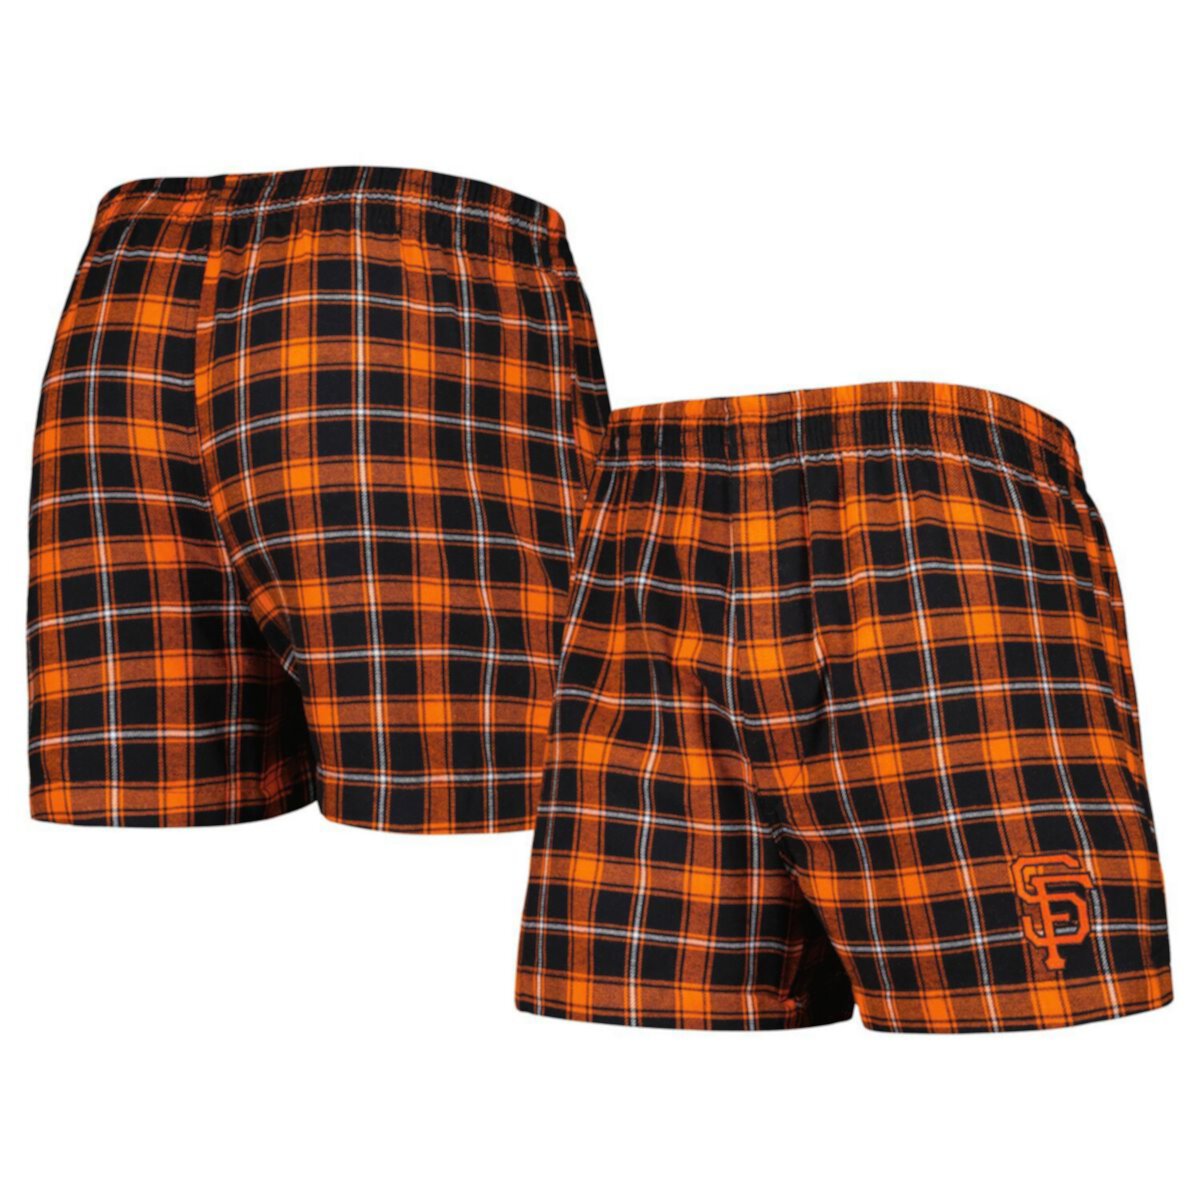 Мужские фланелевые боксеры Concepts Sport черного/оранжевого цвета San Francisco Giants Ledger Unbranded